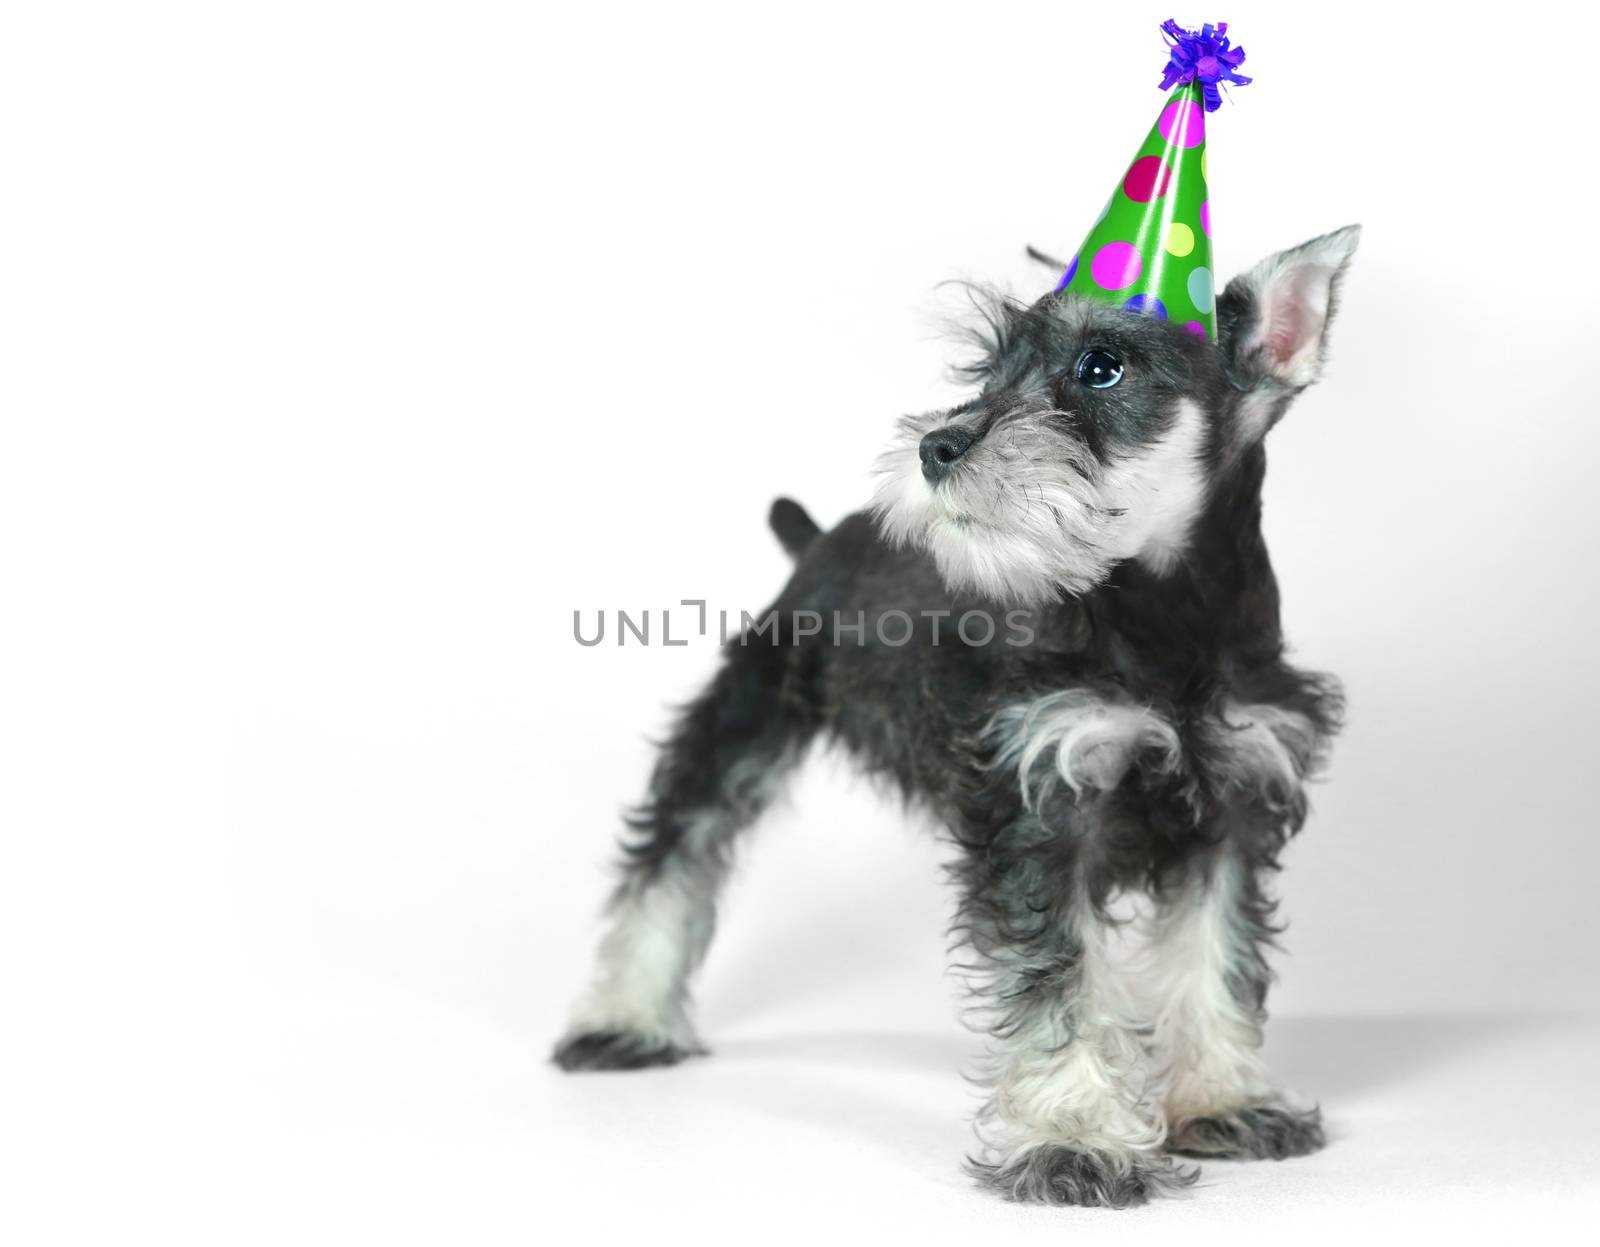 Birthday Celebrating Baby Miniature Schnauzer Puppy Dog on White